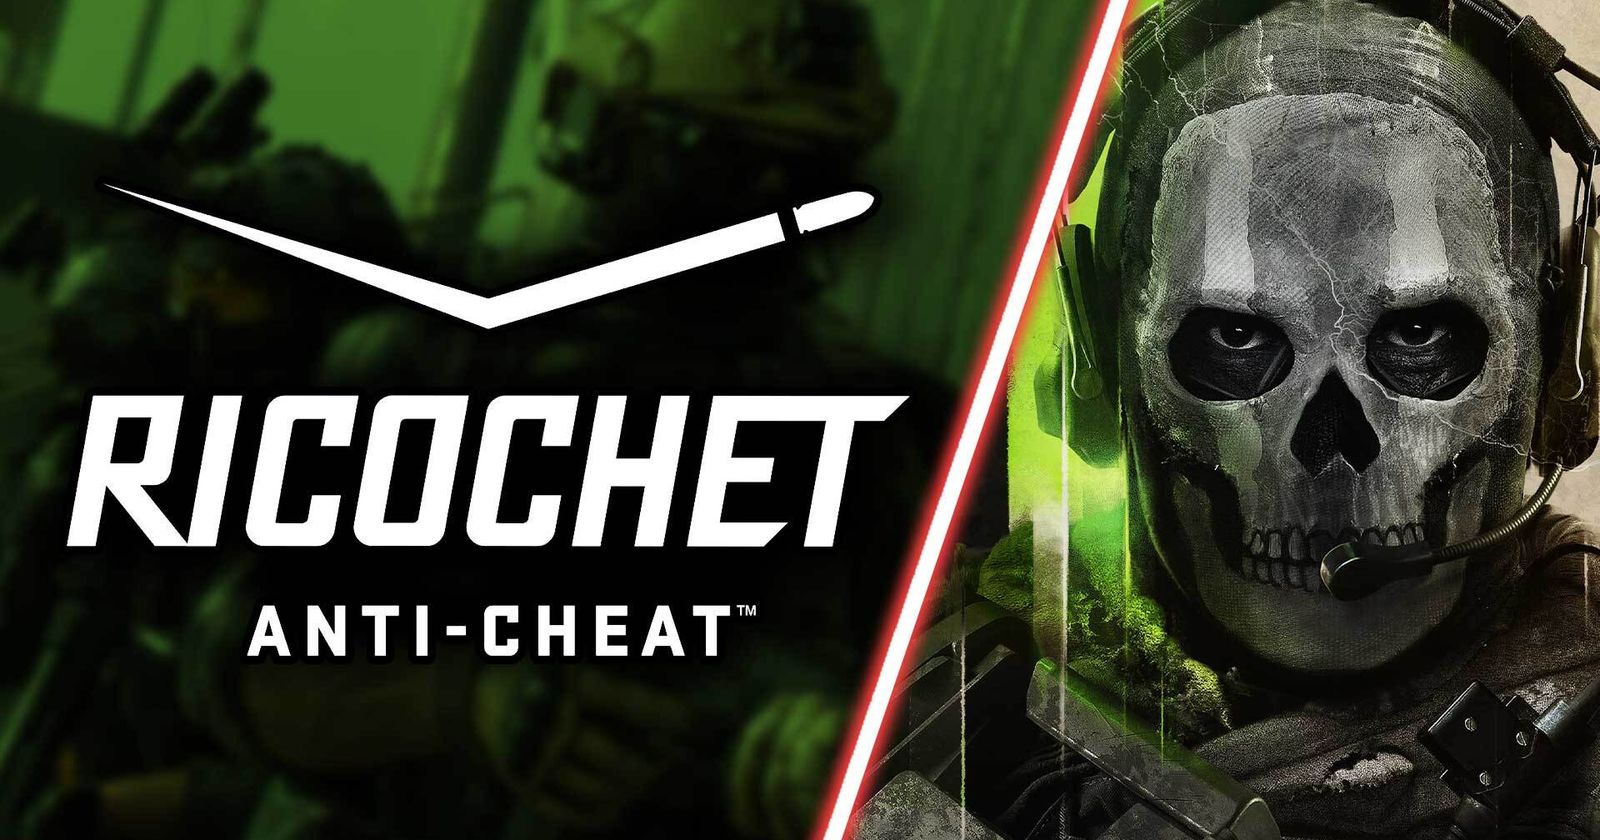 RICOCHET Anti-Cheat™ Progress Report – Season 04 Update